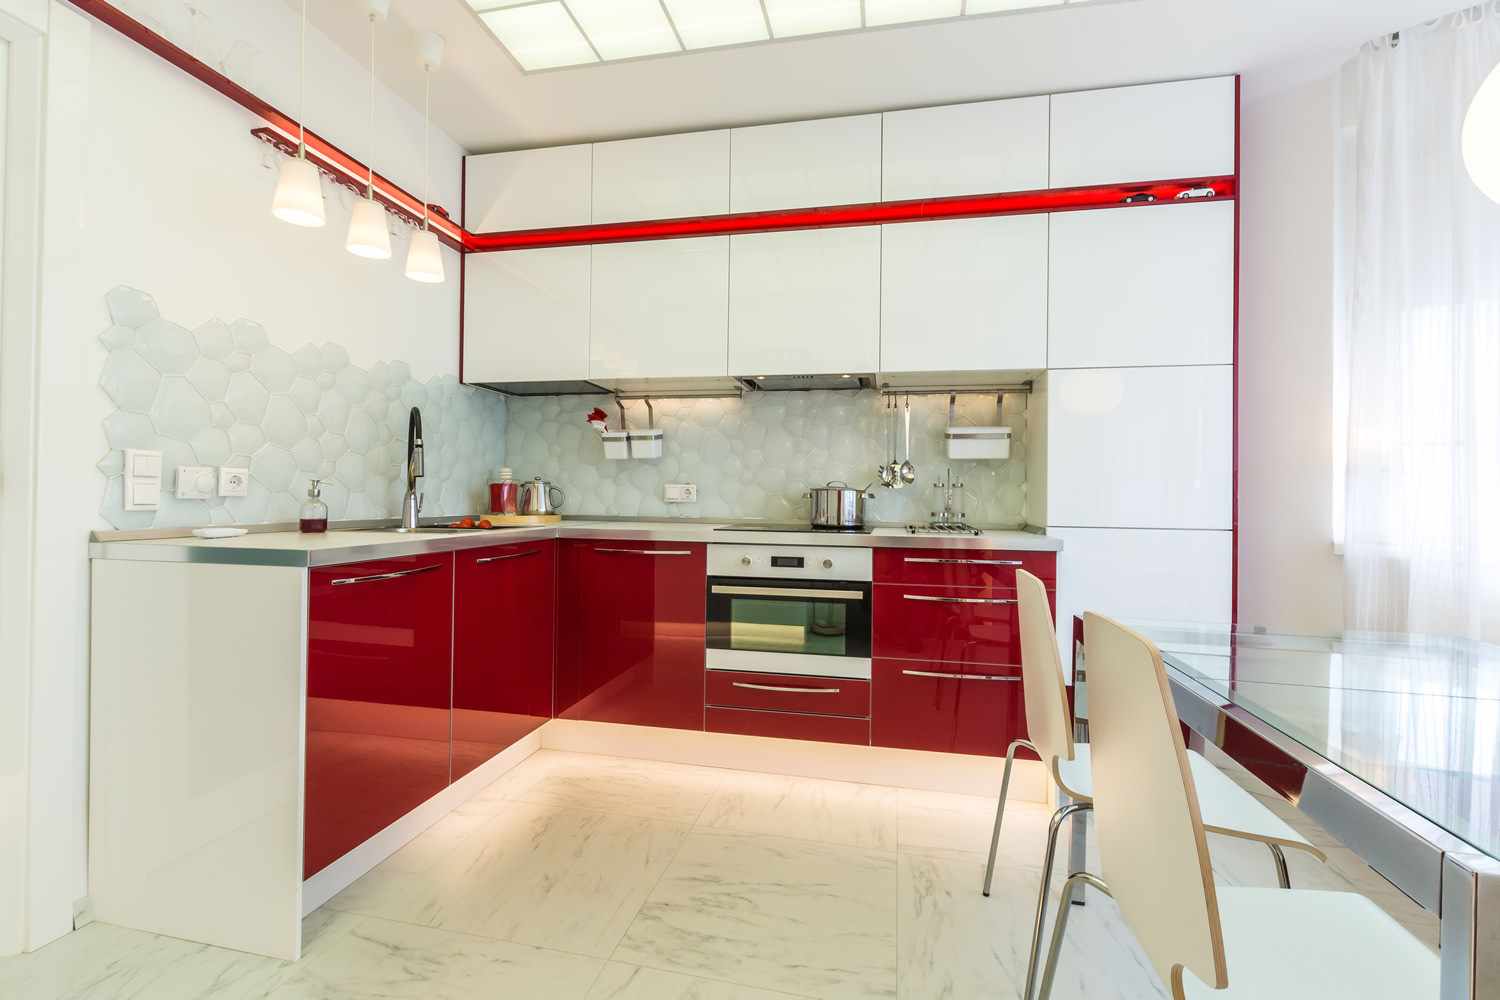 et eksempel på en smuk indretning af rødt køkken